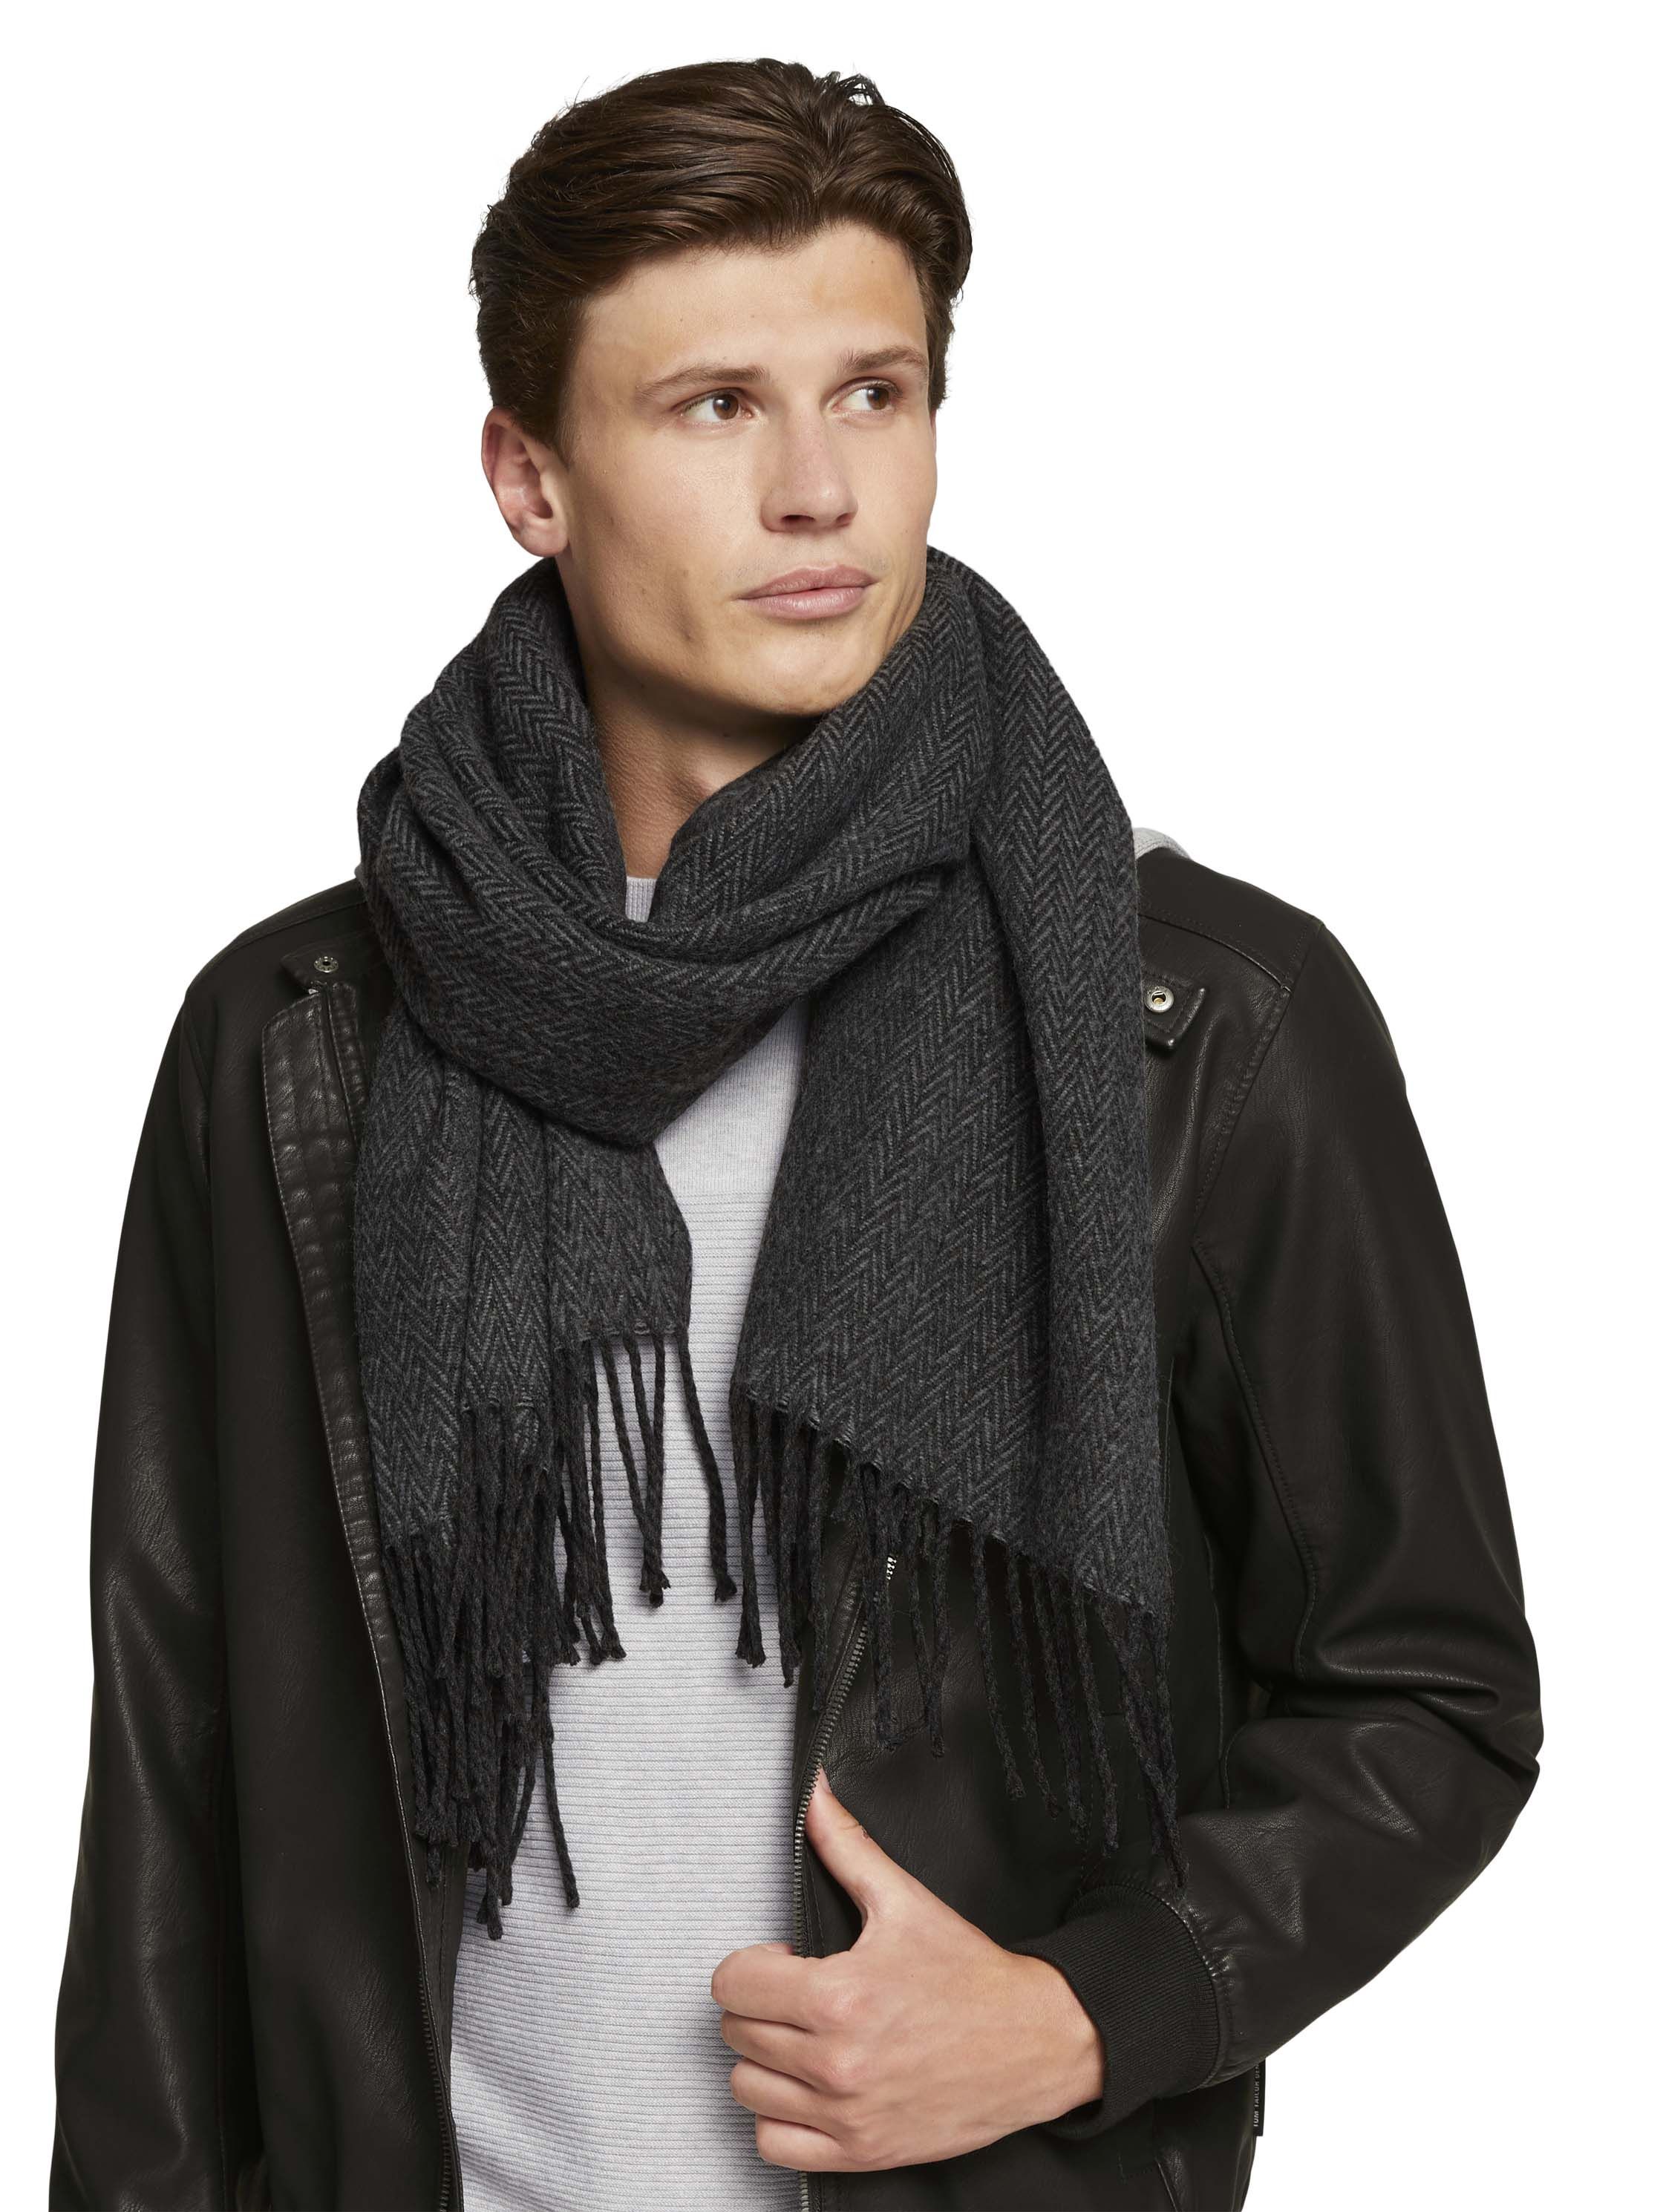 Vertrek Onhandig Tolk Tom Tailor heren sjaal online kopen?